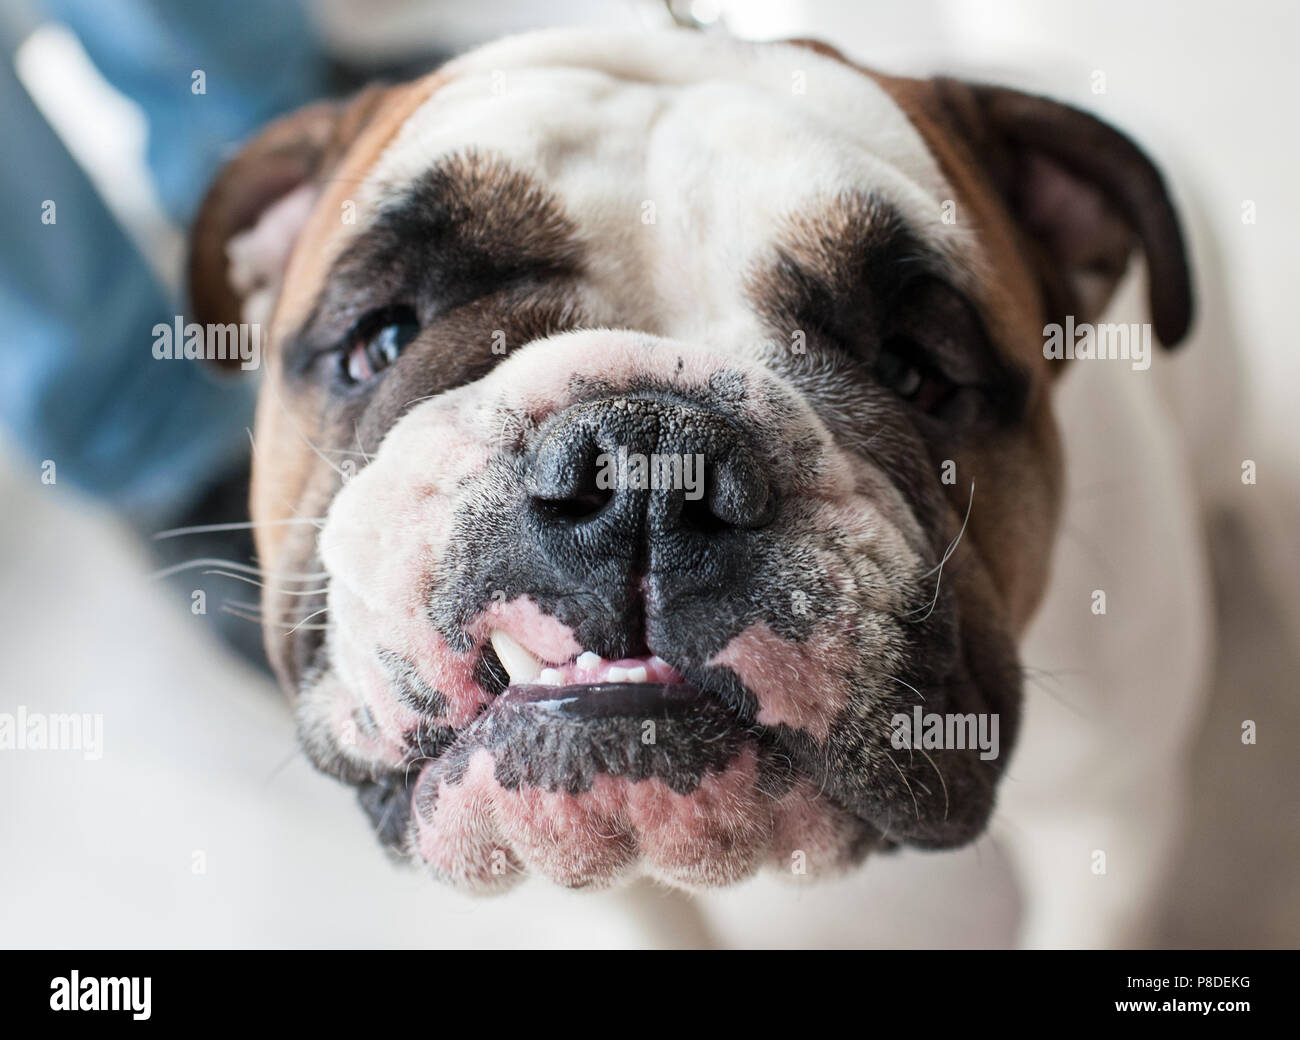 English Bulldog at dog show, Moscow. Stock Photo